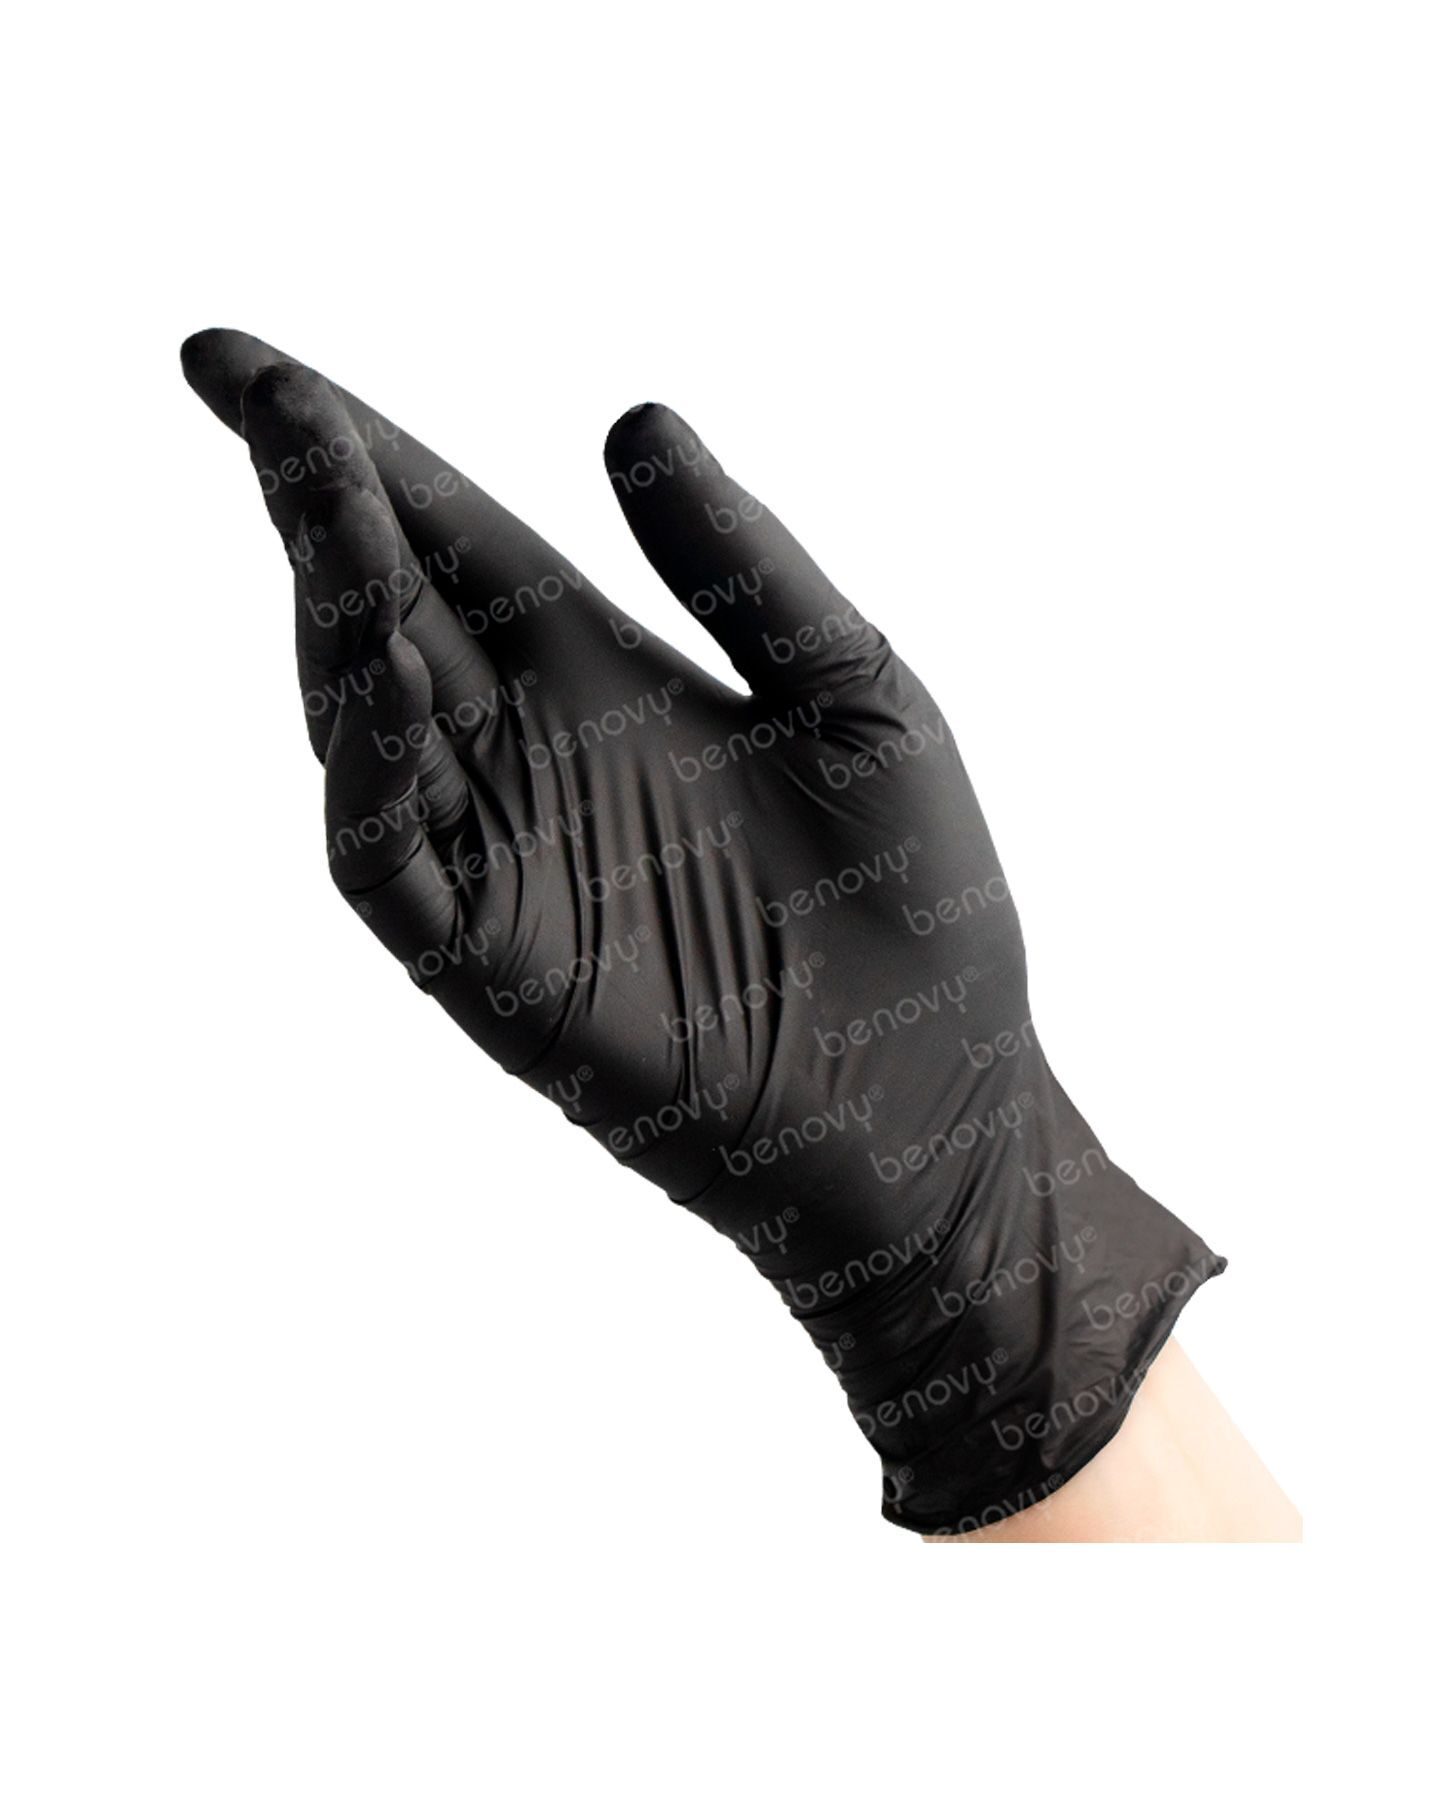 Benovy перчатки купить. Перчатки нитриловые размер XL (черные) 50 пар. Перчатки Benovy черные нитрил l. Benovy черные перчатки нитриловые 100 пар. Бенови 100 пар нитрил черные.